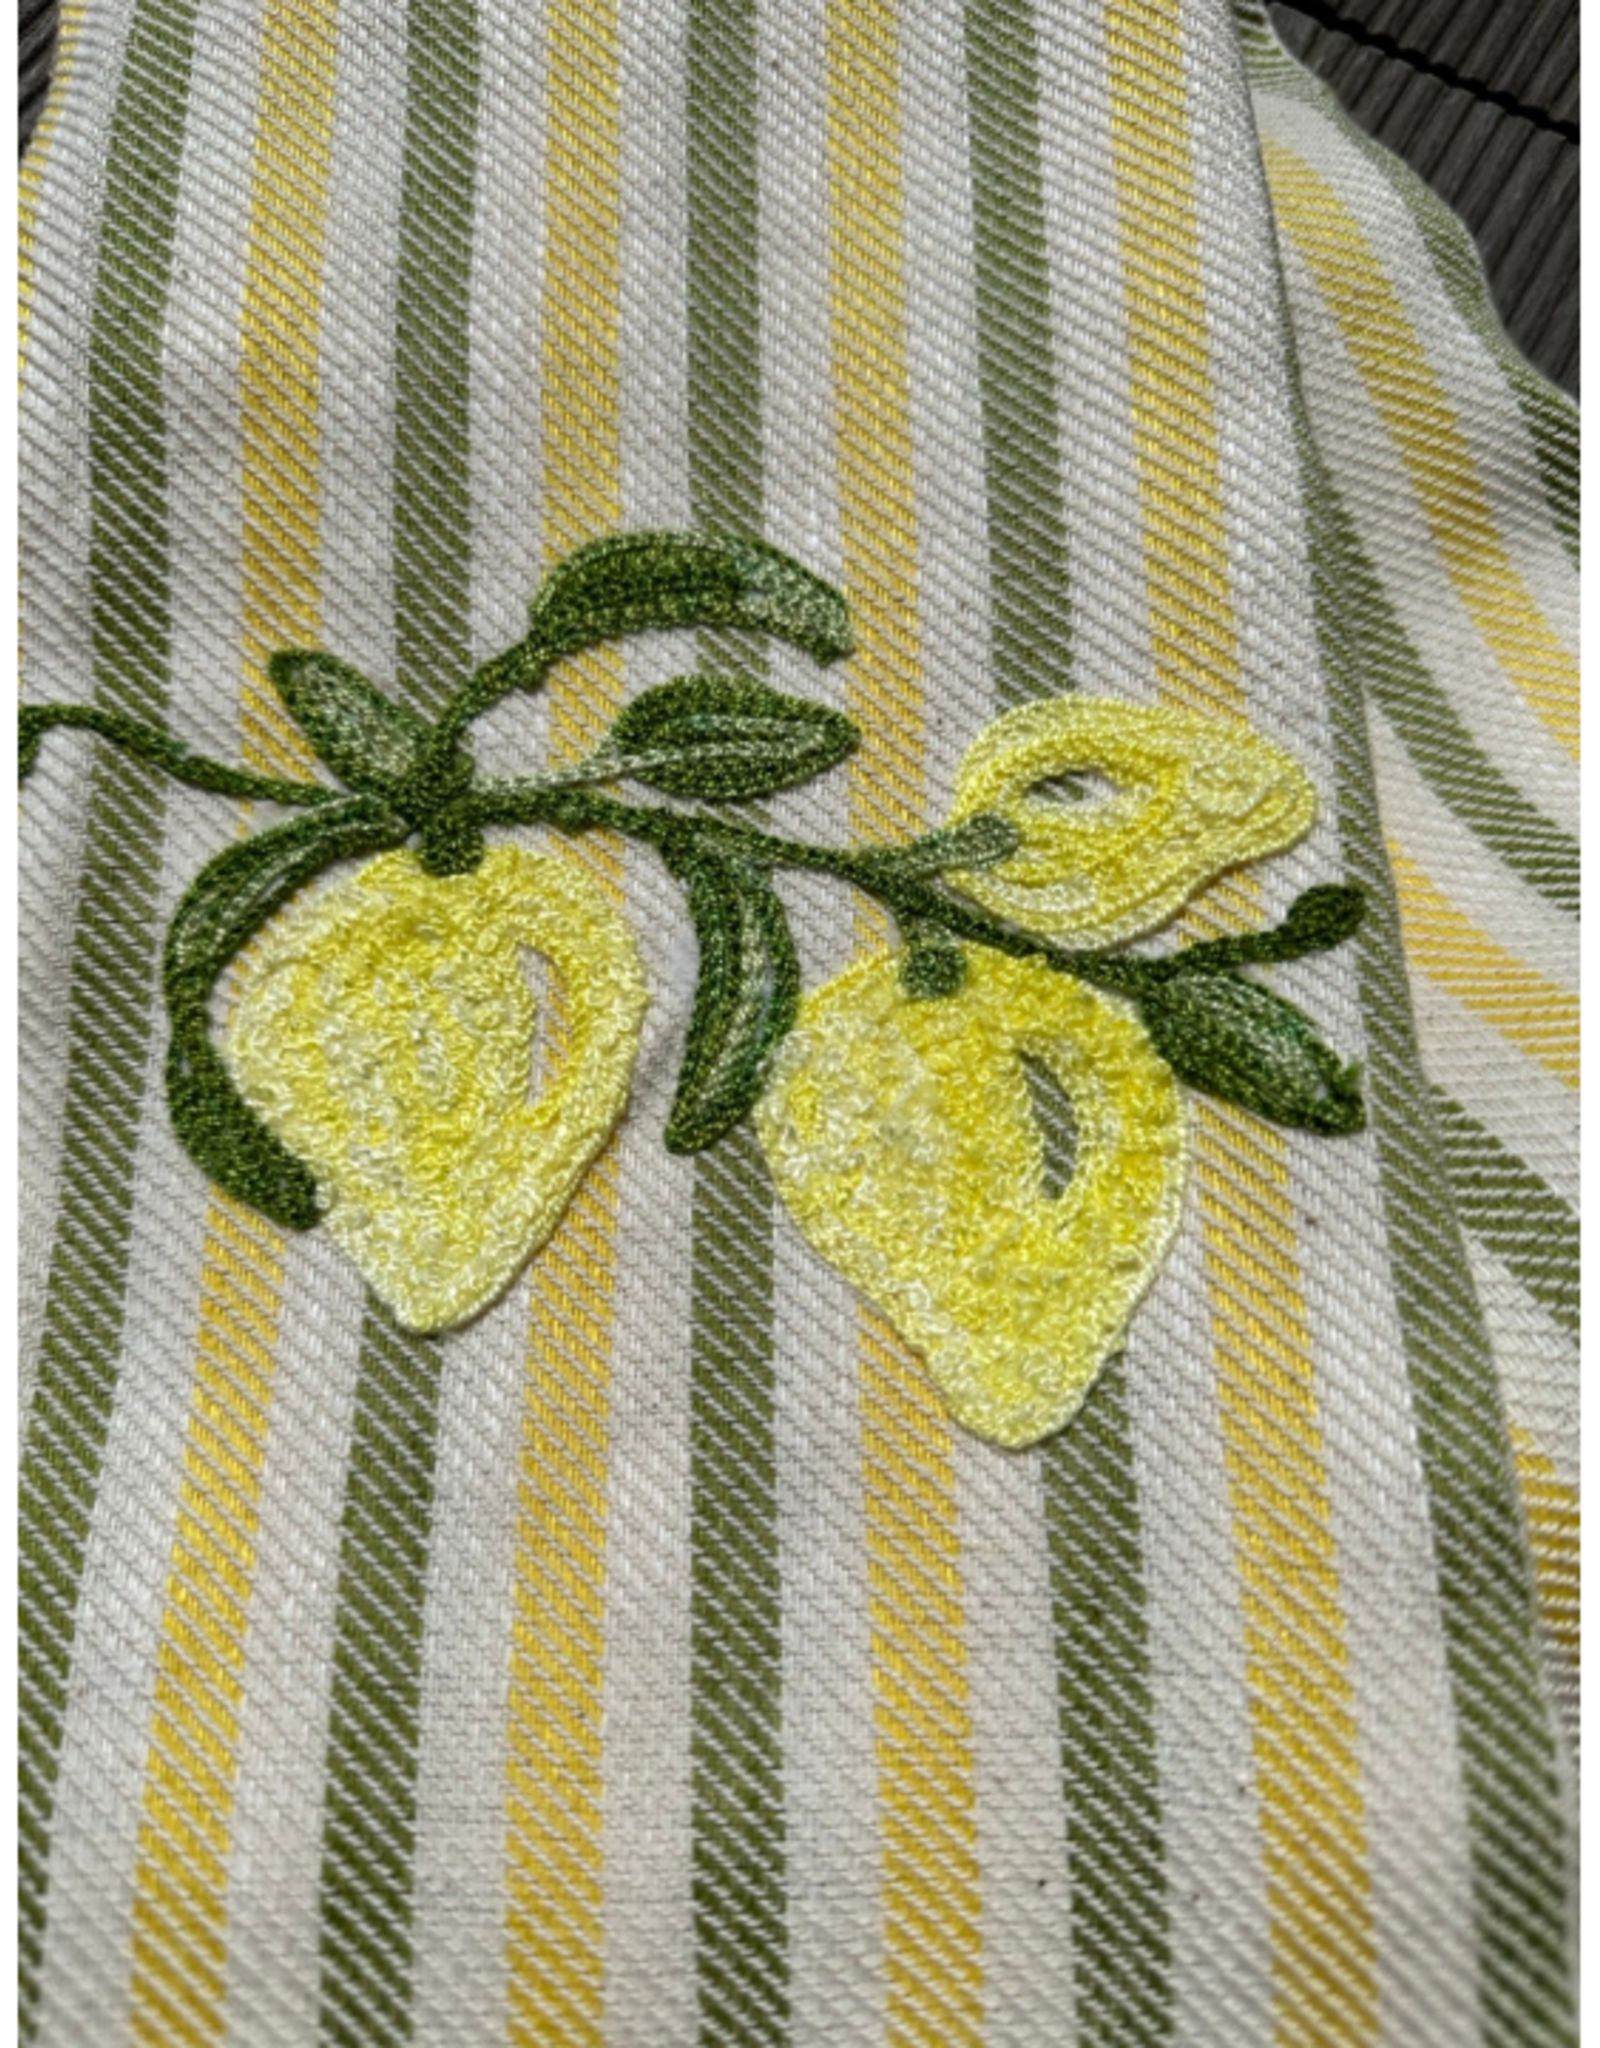 Busatti Italy Lemons - Pomelo Kitchen Towel Bicolor - 60% Linen 40% Cotton